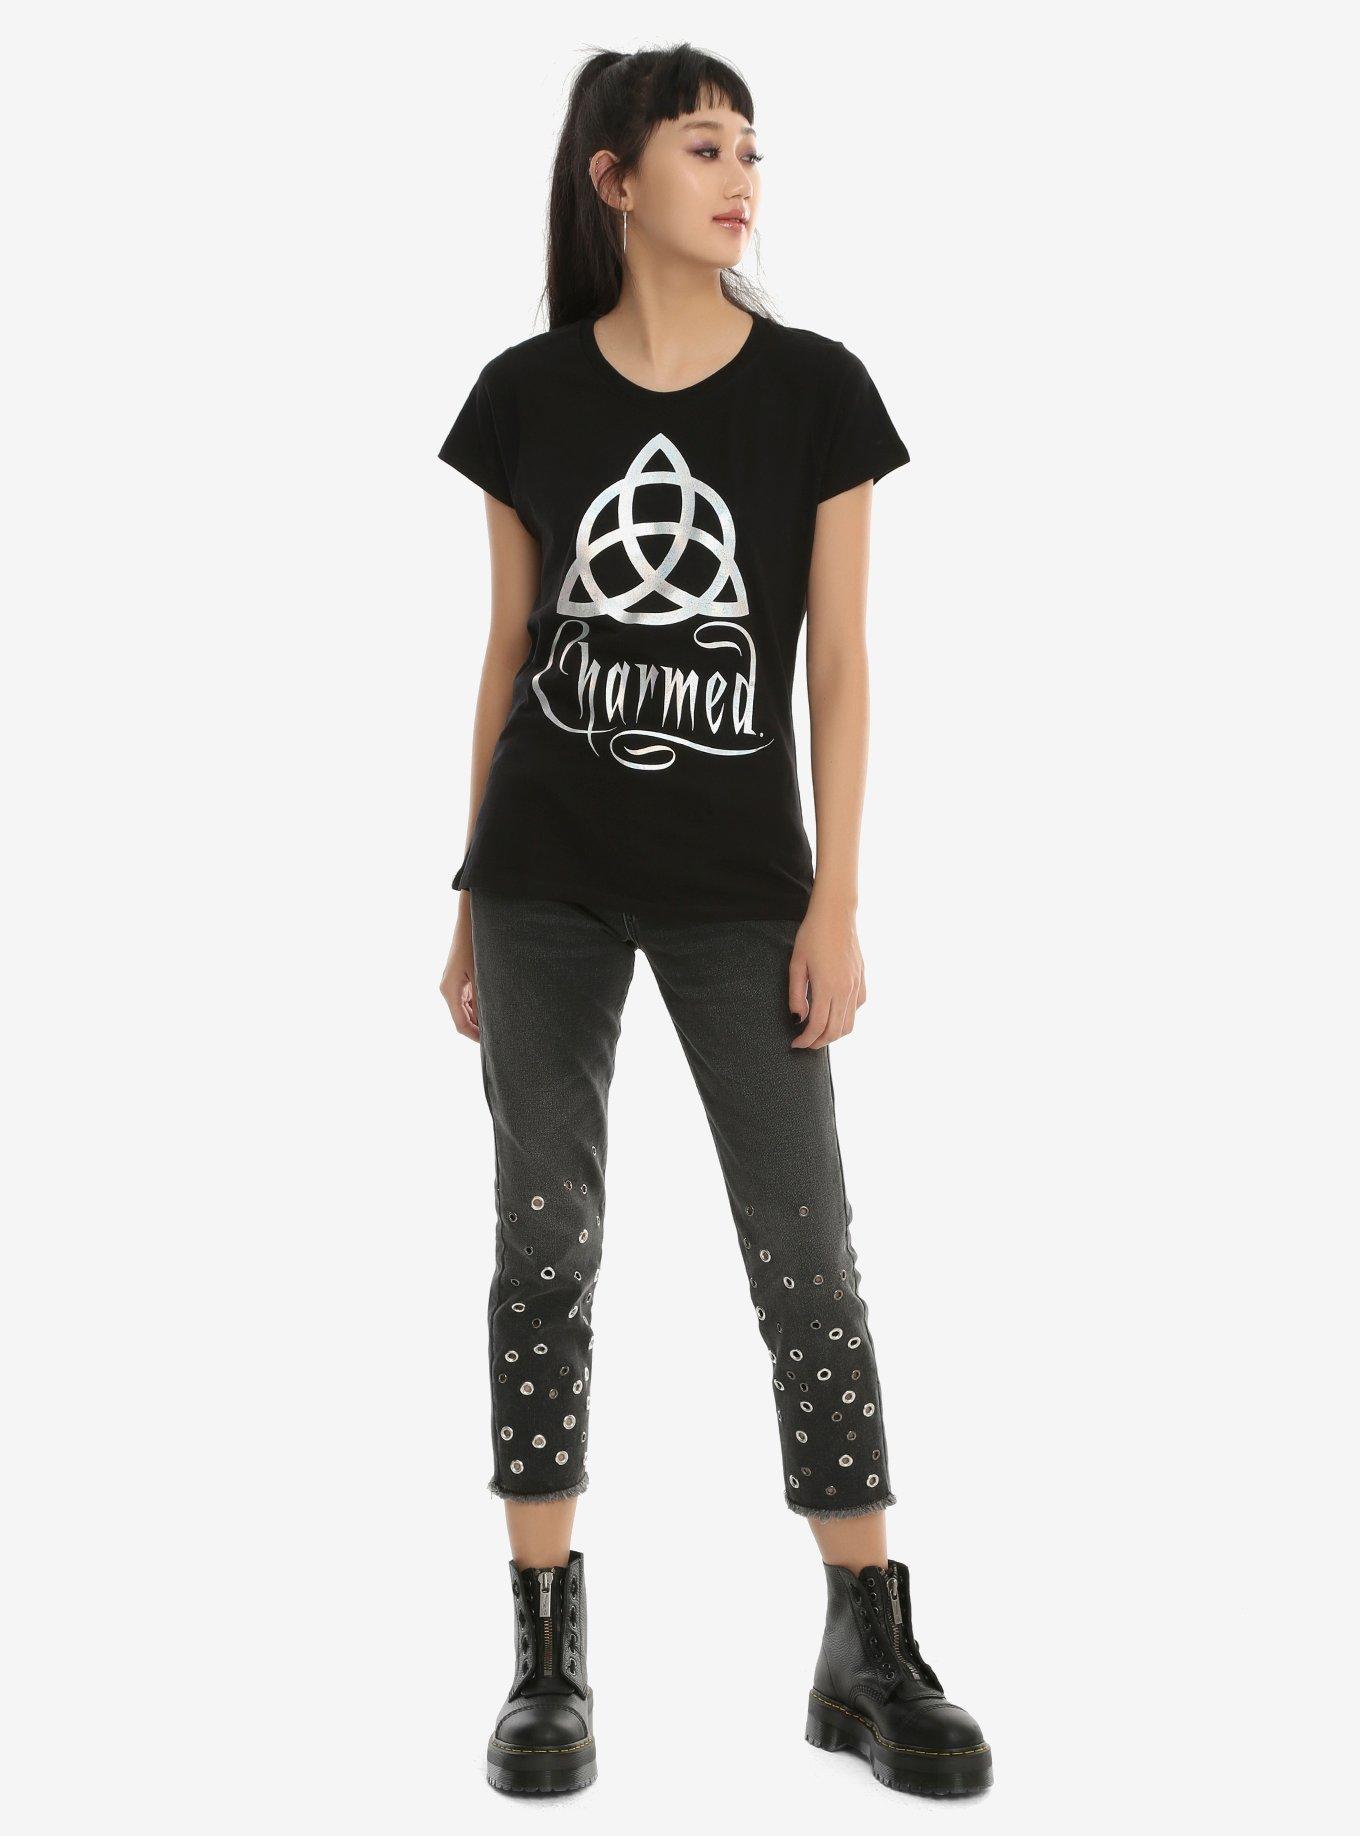 Charmed Holographic Logo Girls T-Shirt, BLACK, alternate